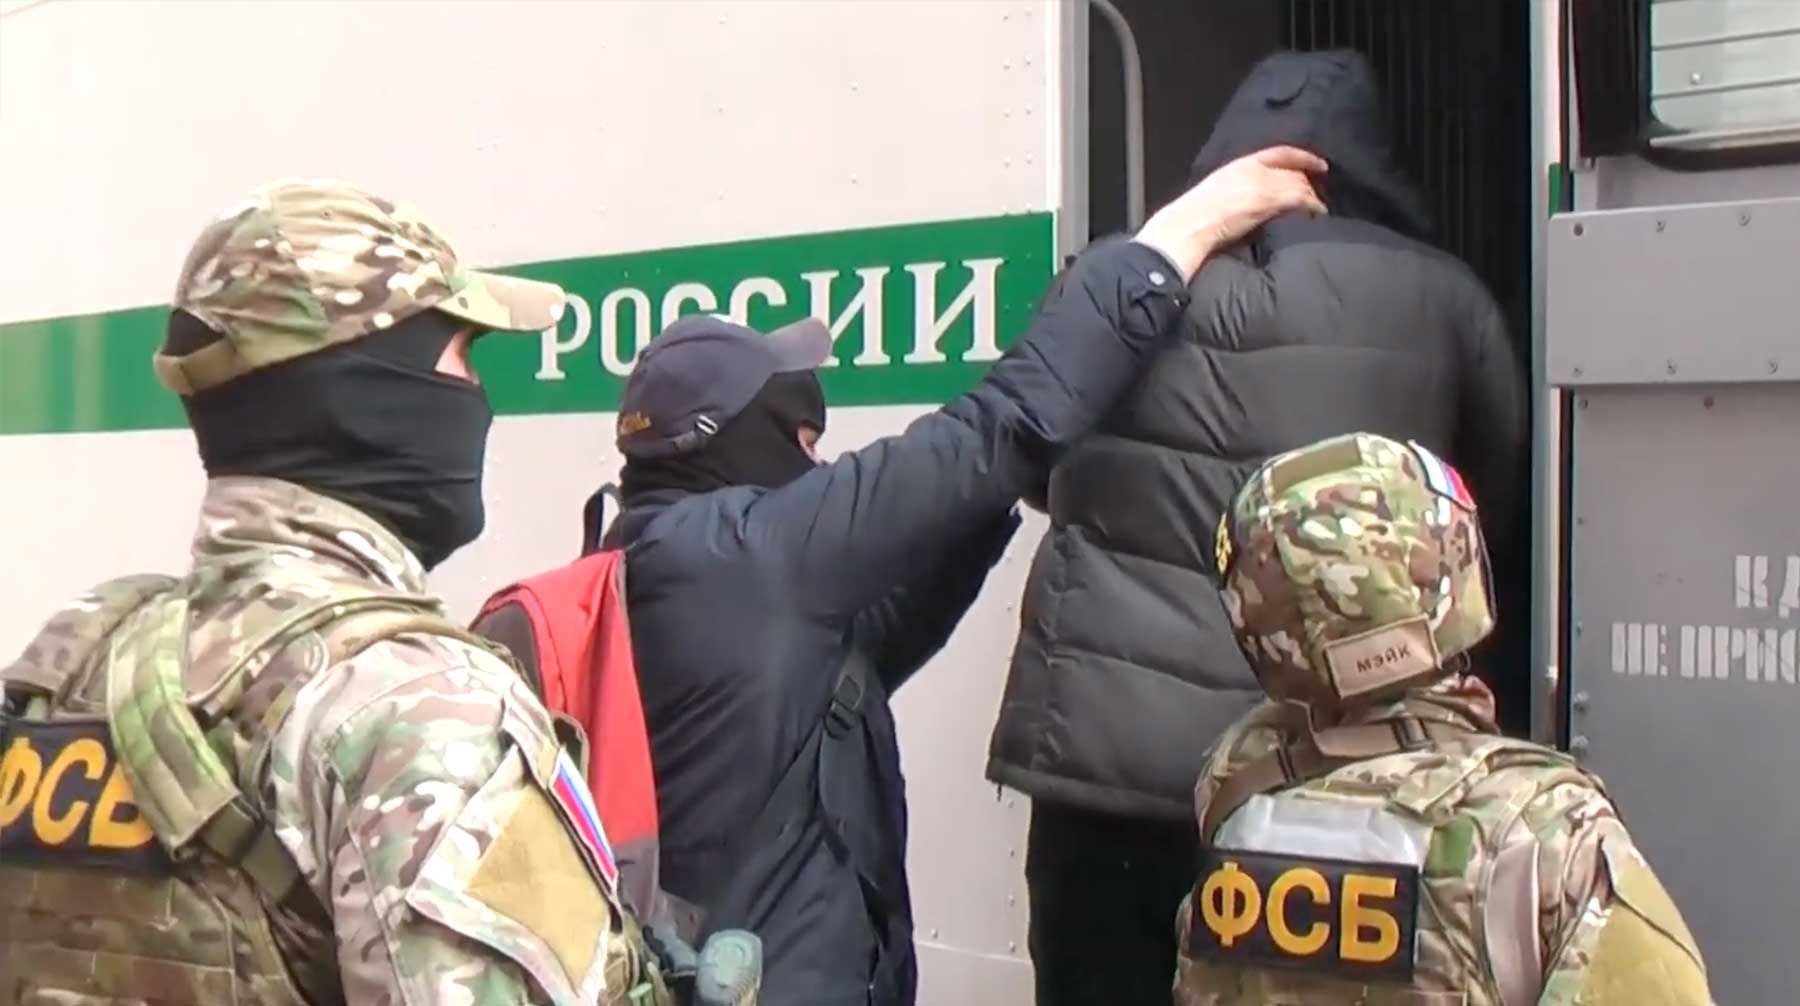 ФСБ затримала українця в окупованому Криму: деталі